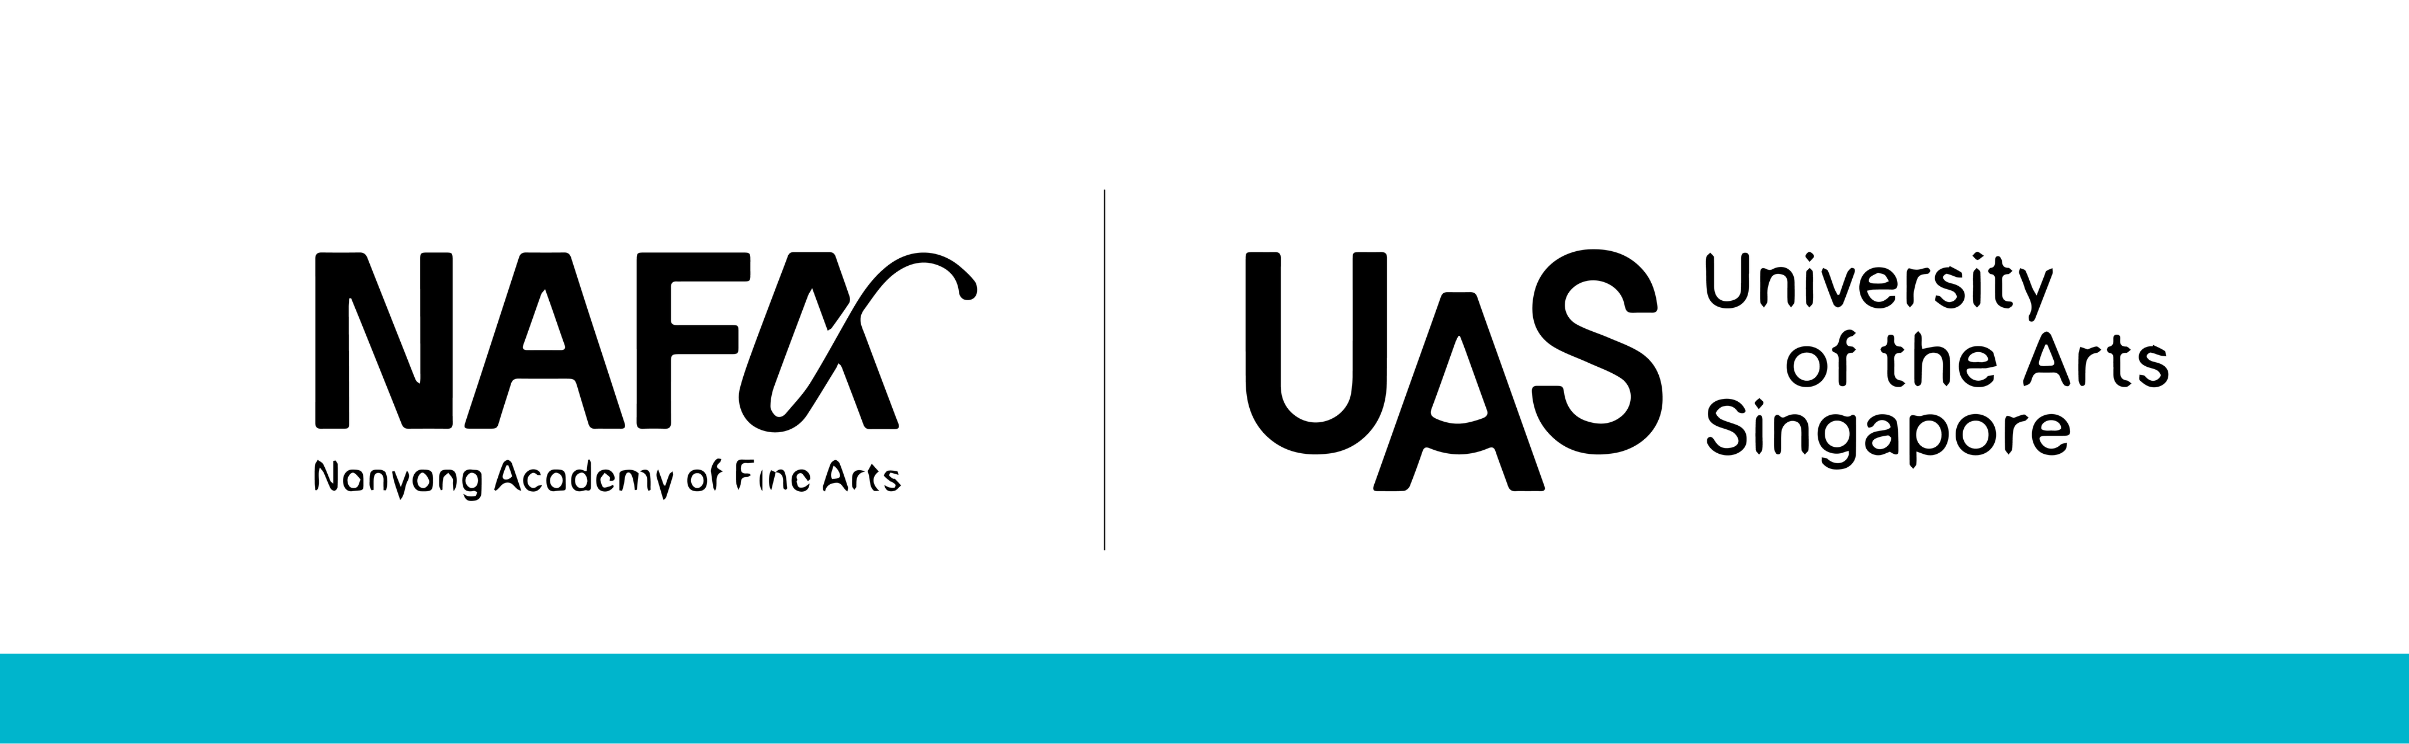 NUS UAS Logo